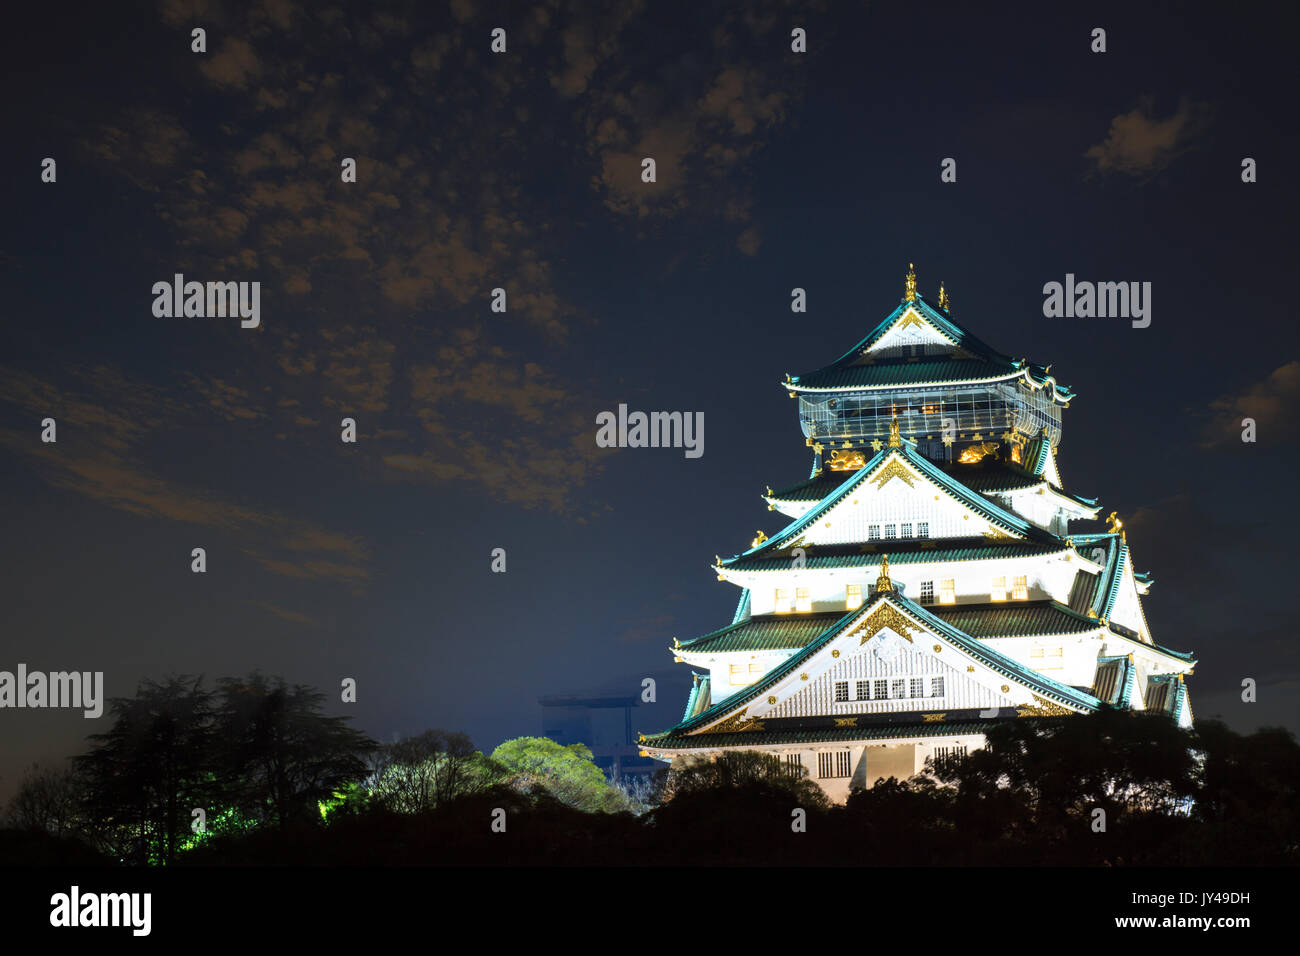 Le magnifique château d'Osaka à Osaka, Japon avec arrière-plan de nice Banque D'Images